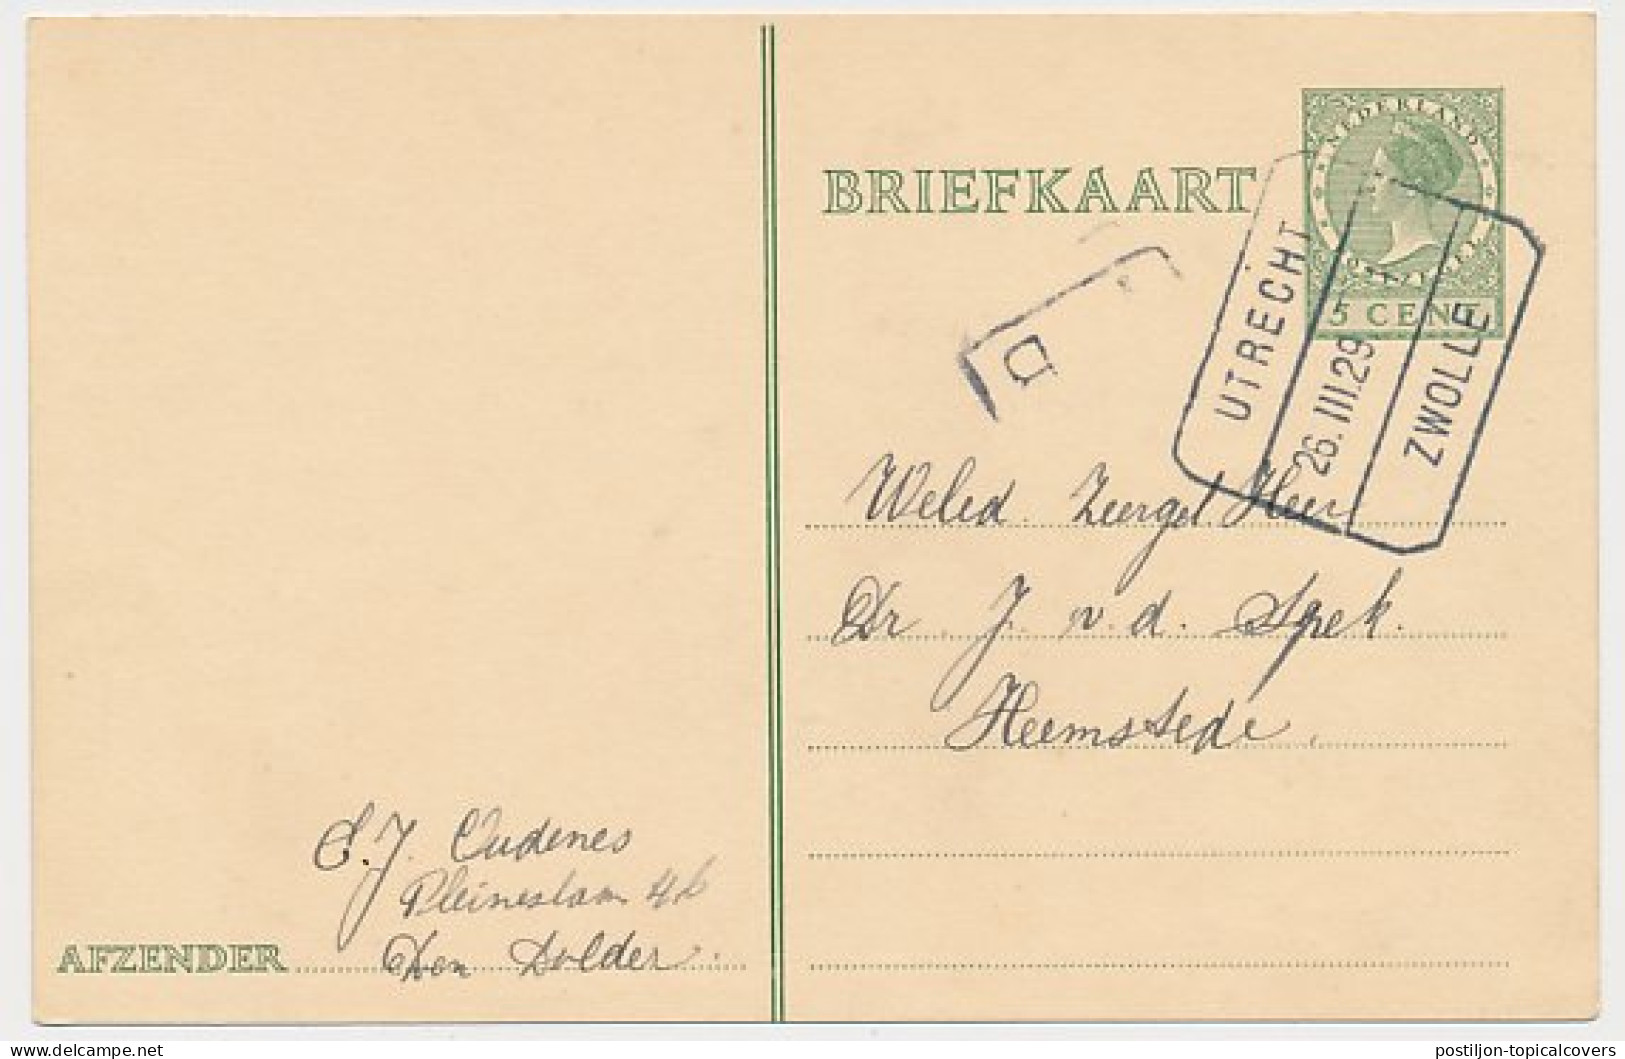 Treinblokstempel : Utrecht - Zwolle I 1929 ( Den Dolder ) - Ohne Zuordnung